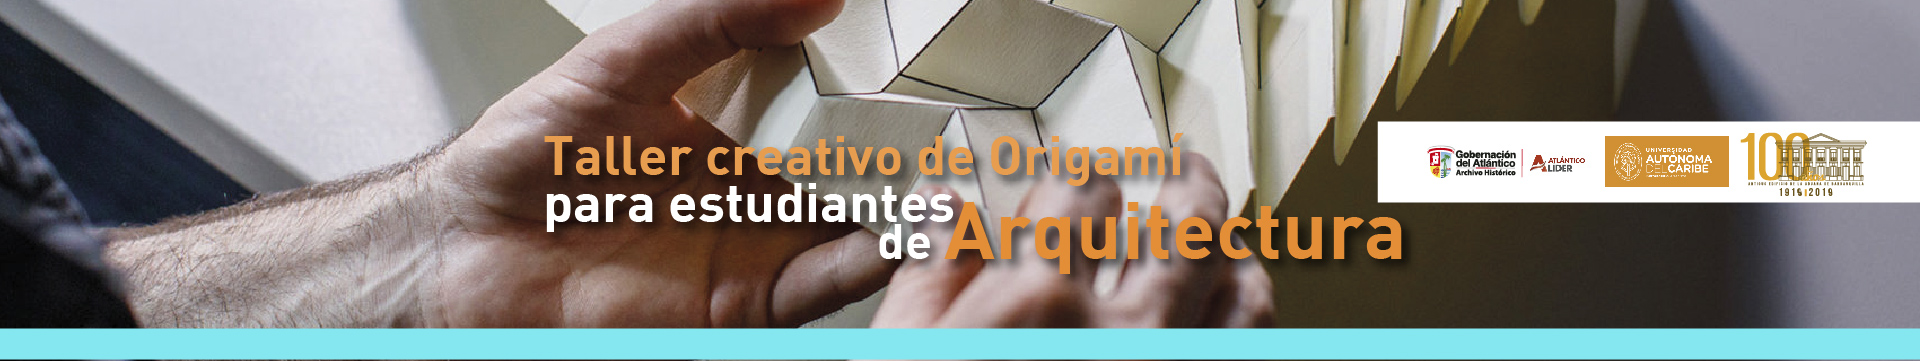 Origami - ¿Cuál Es El Plan?